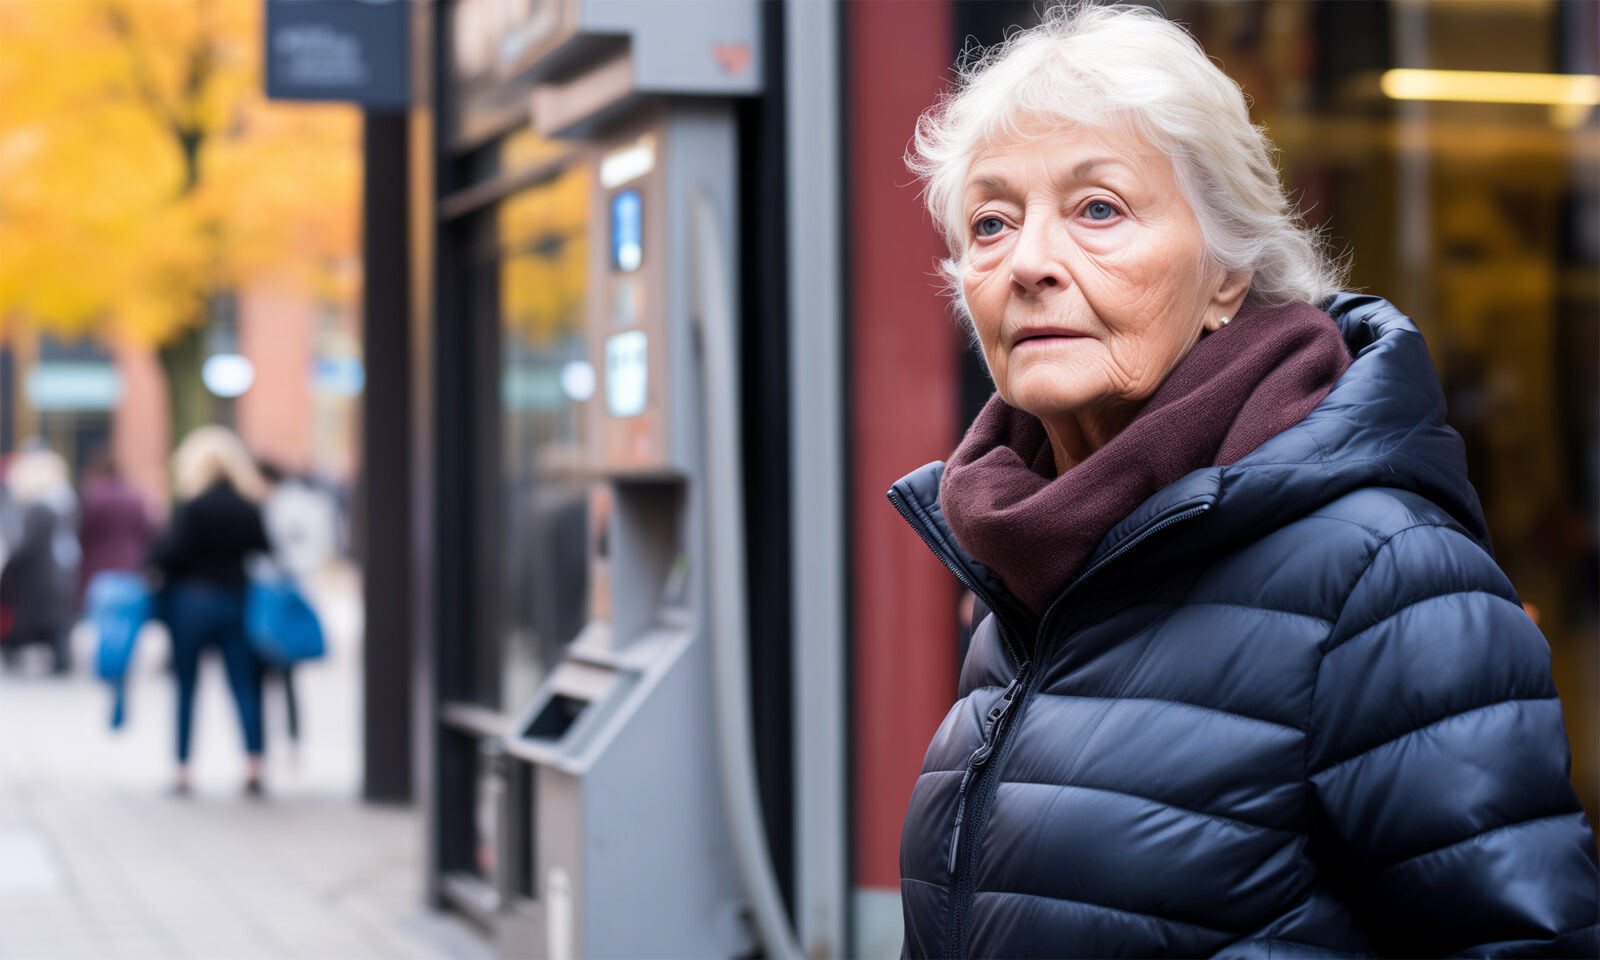 Umirovljenica razočarana uz bankomat, simbol nezadovoljstva zbog izračuna 13. mirovine. Očekivanja nisu ispunjena, a socijalna pravda dovedena u pitanje. Hoće li umirovljenici dobiti pravednu nadoknadu?